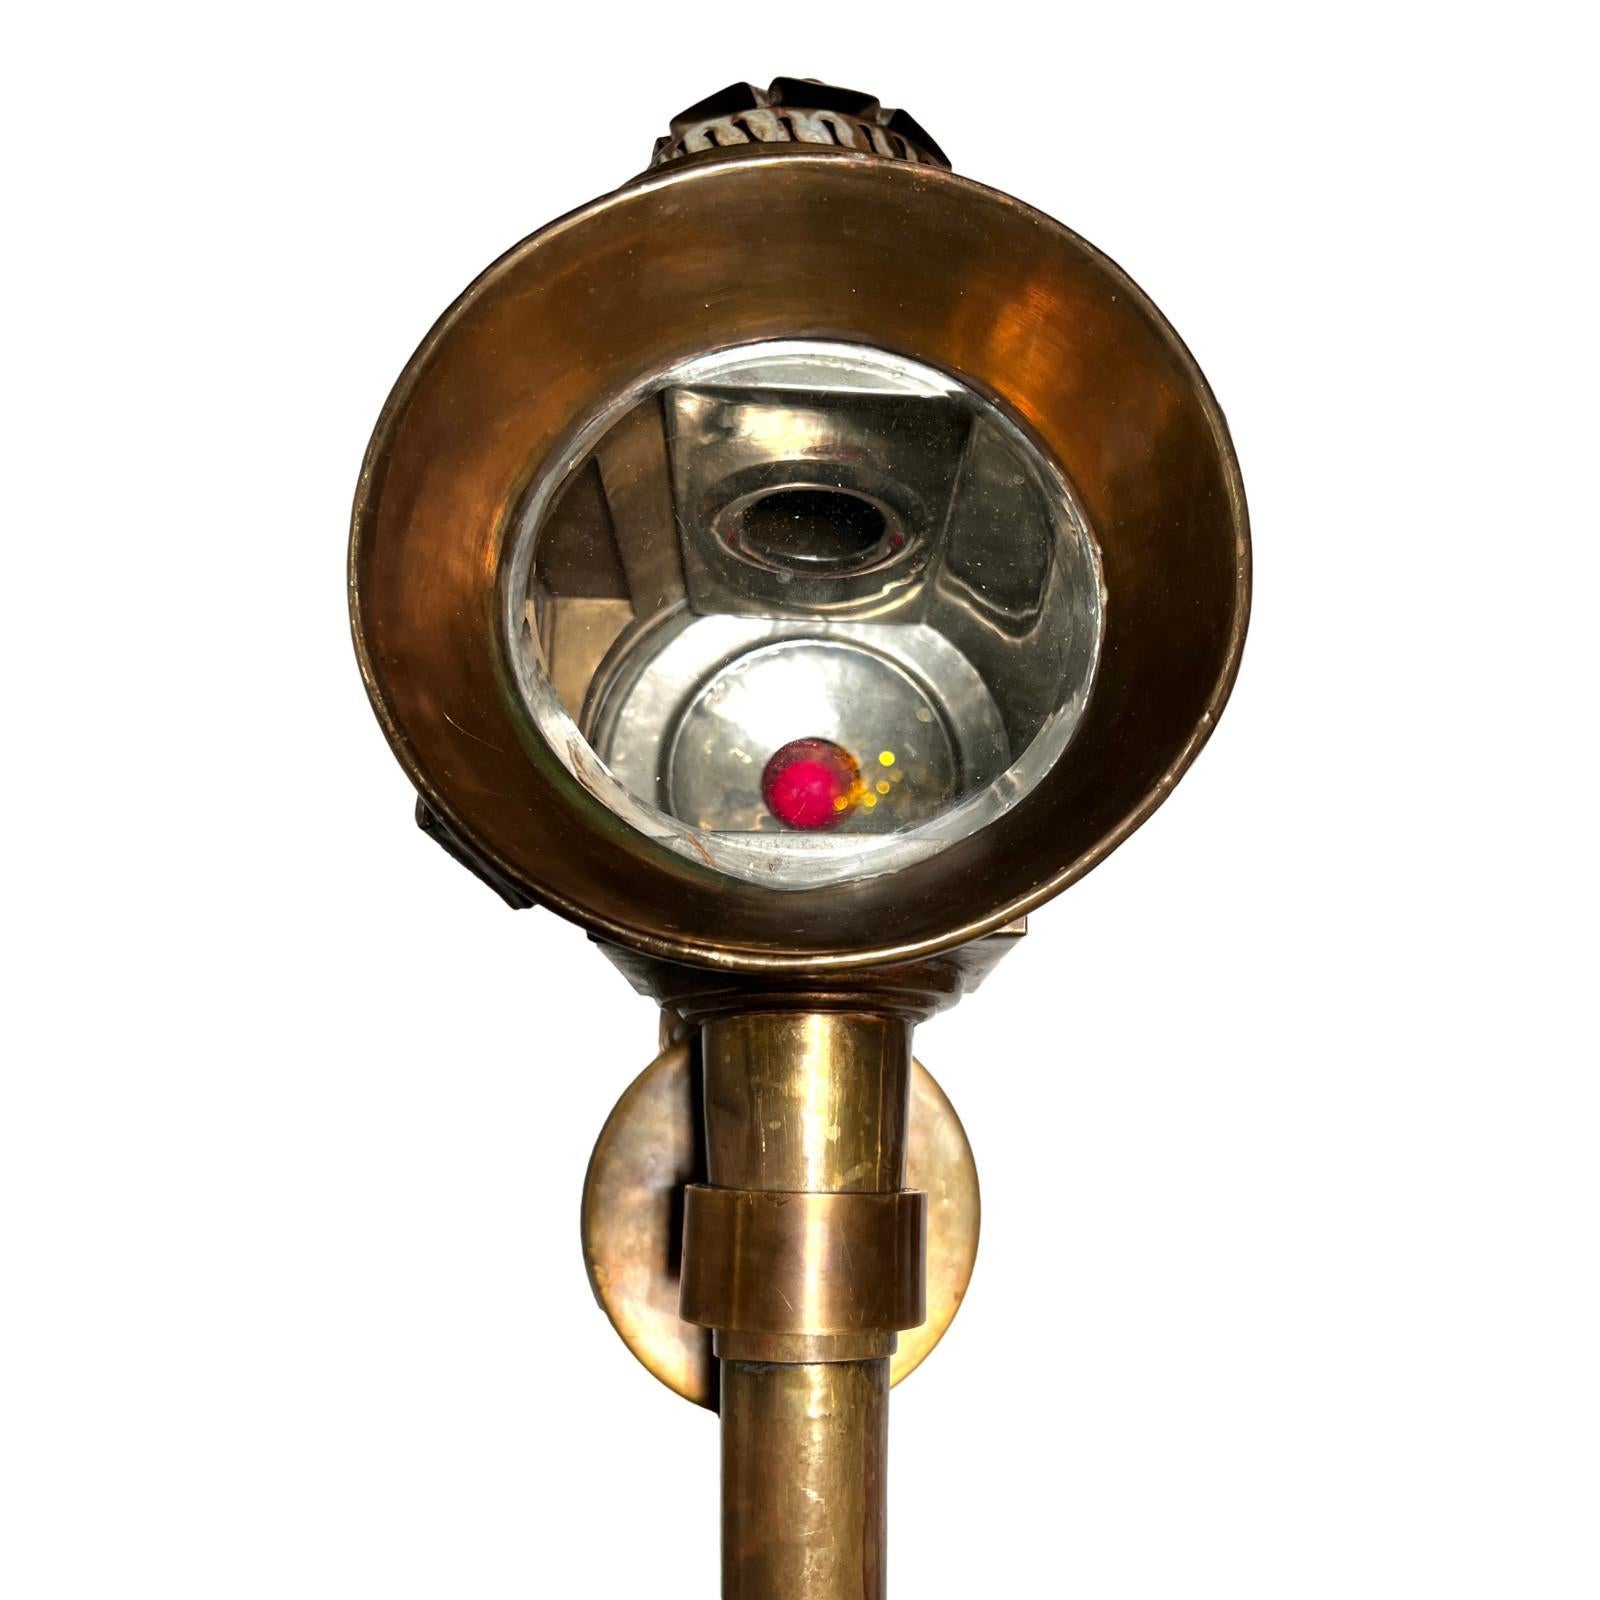 Paire d'appliques à lanterne en bronze français des années 1920.

Mesures :
Hauteur : 23 ?
Largeur : 7,5 ?
Profondeur : 8 ?